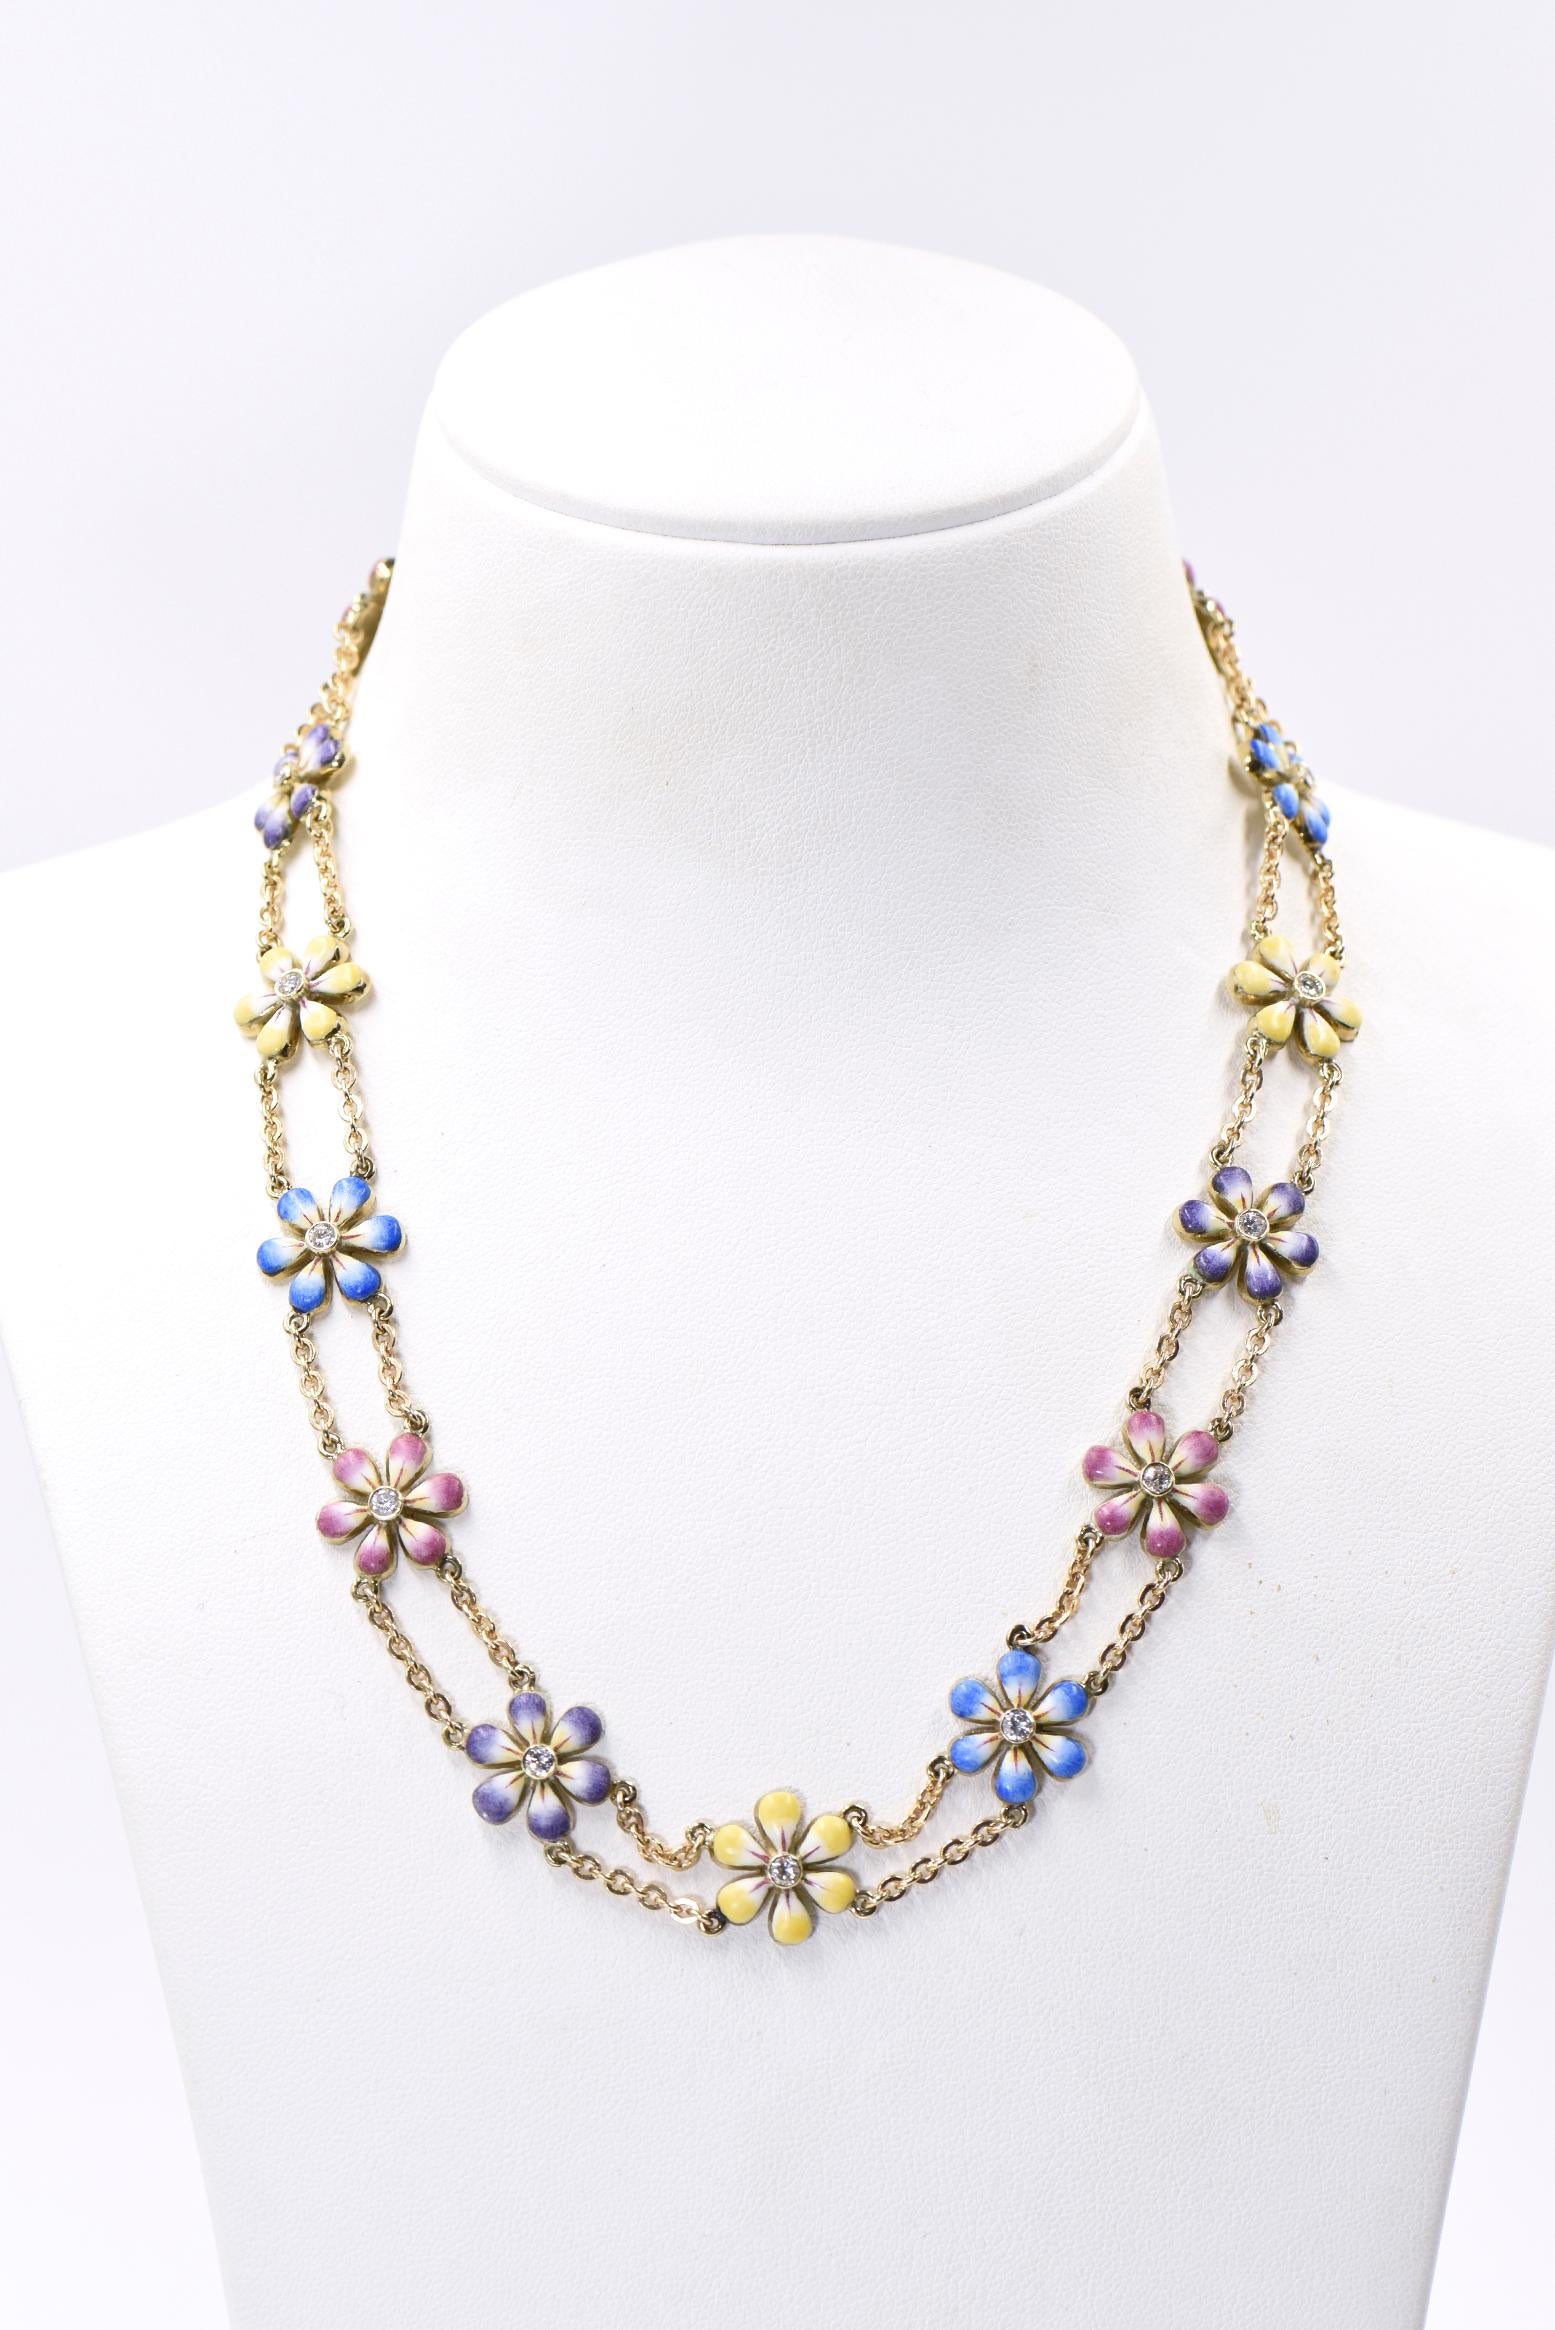 Ce collier de 16 pouces fait partie de la ligne Daisy, une magnifique ligne de bijoux faits main par Sandra J. Sensations.  Chaque fleur est peinte à la main par un artiste en émail. Les fleurs sont en 14k avec des diamants au centre. Chaque diamant